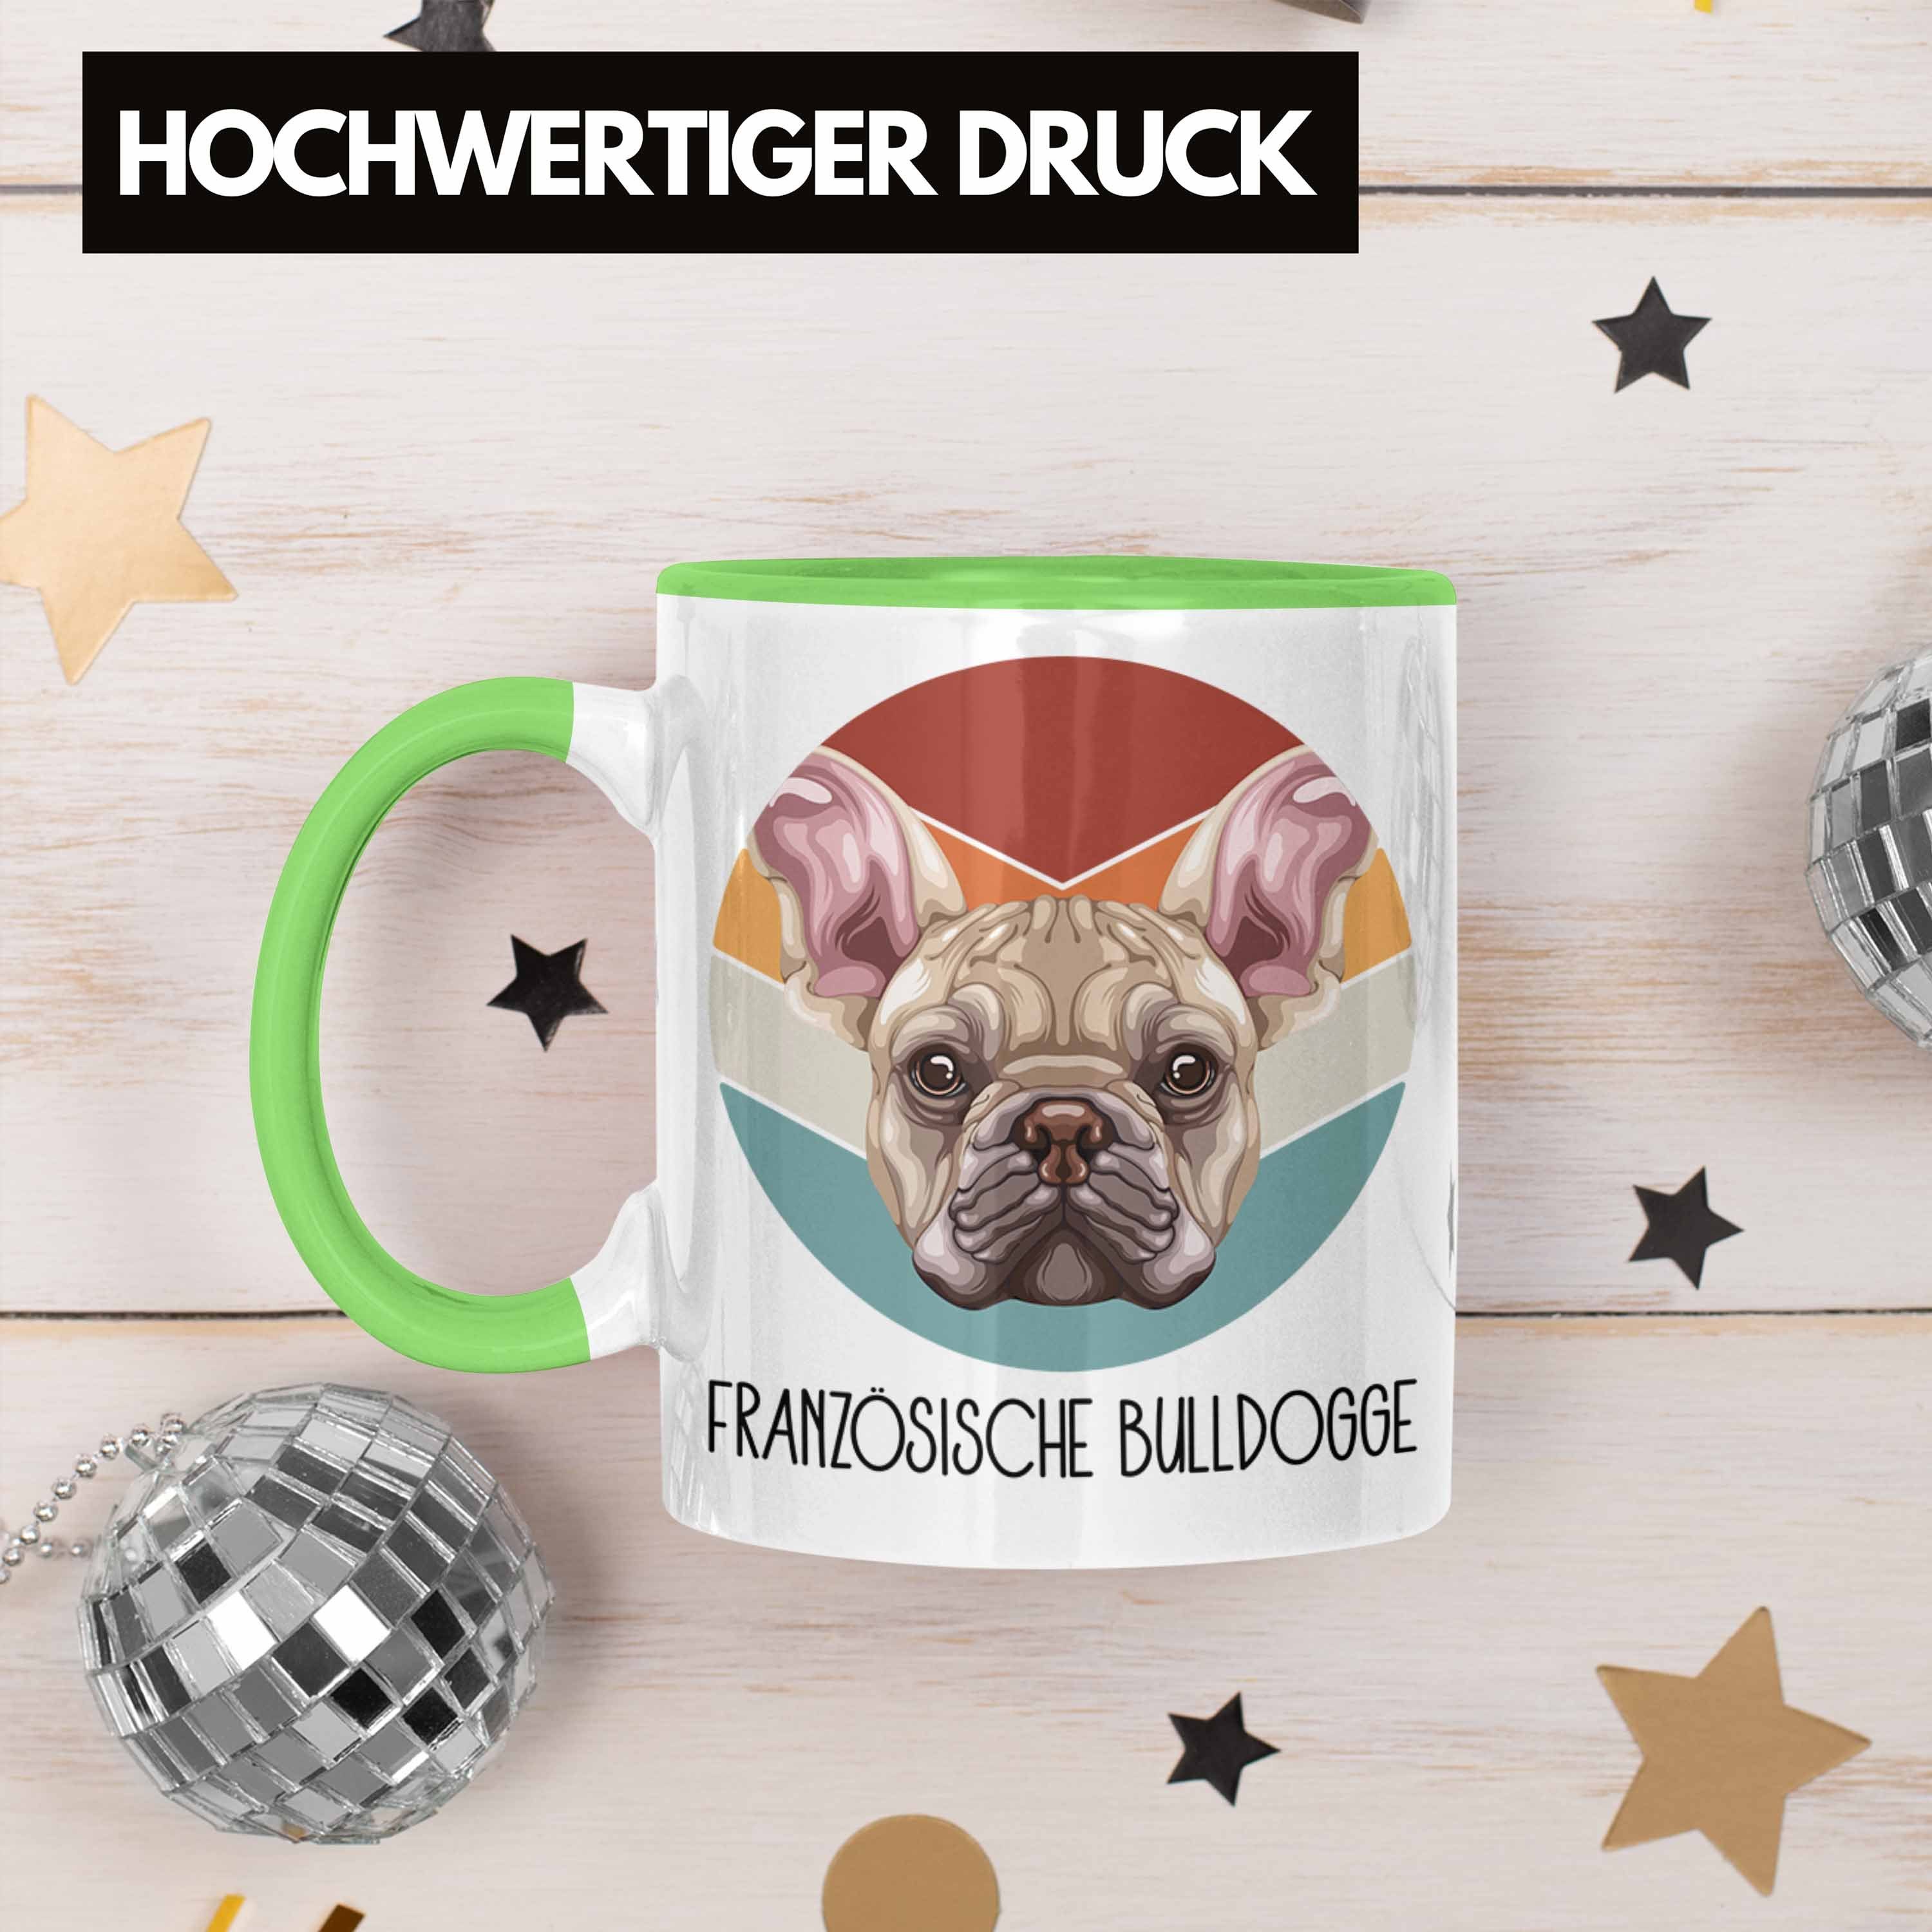 Besitzer Tasse Französische Bulldogge Lustiger Spruch Geschen Geschenk Tasse Grün Trendation